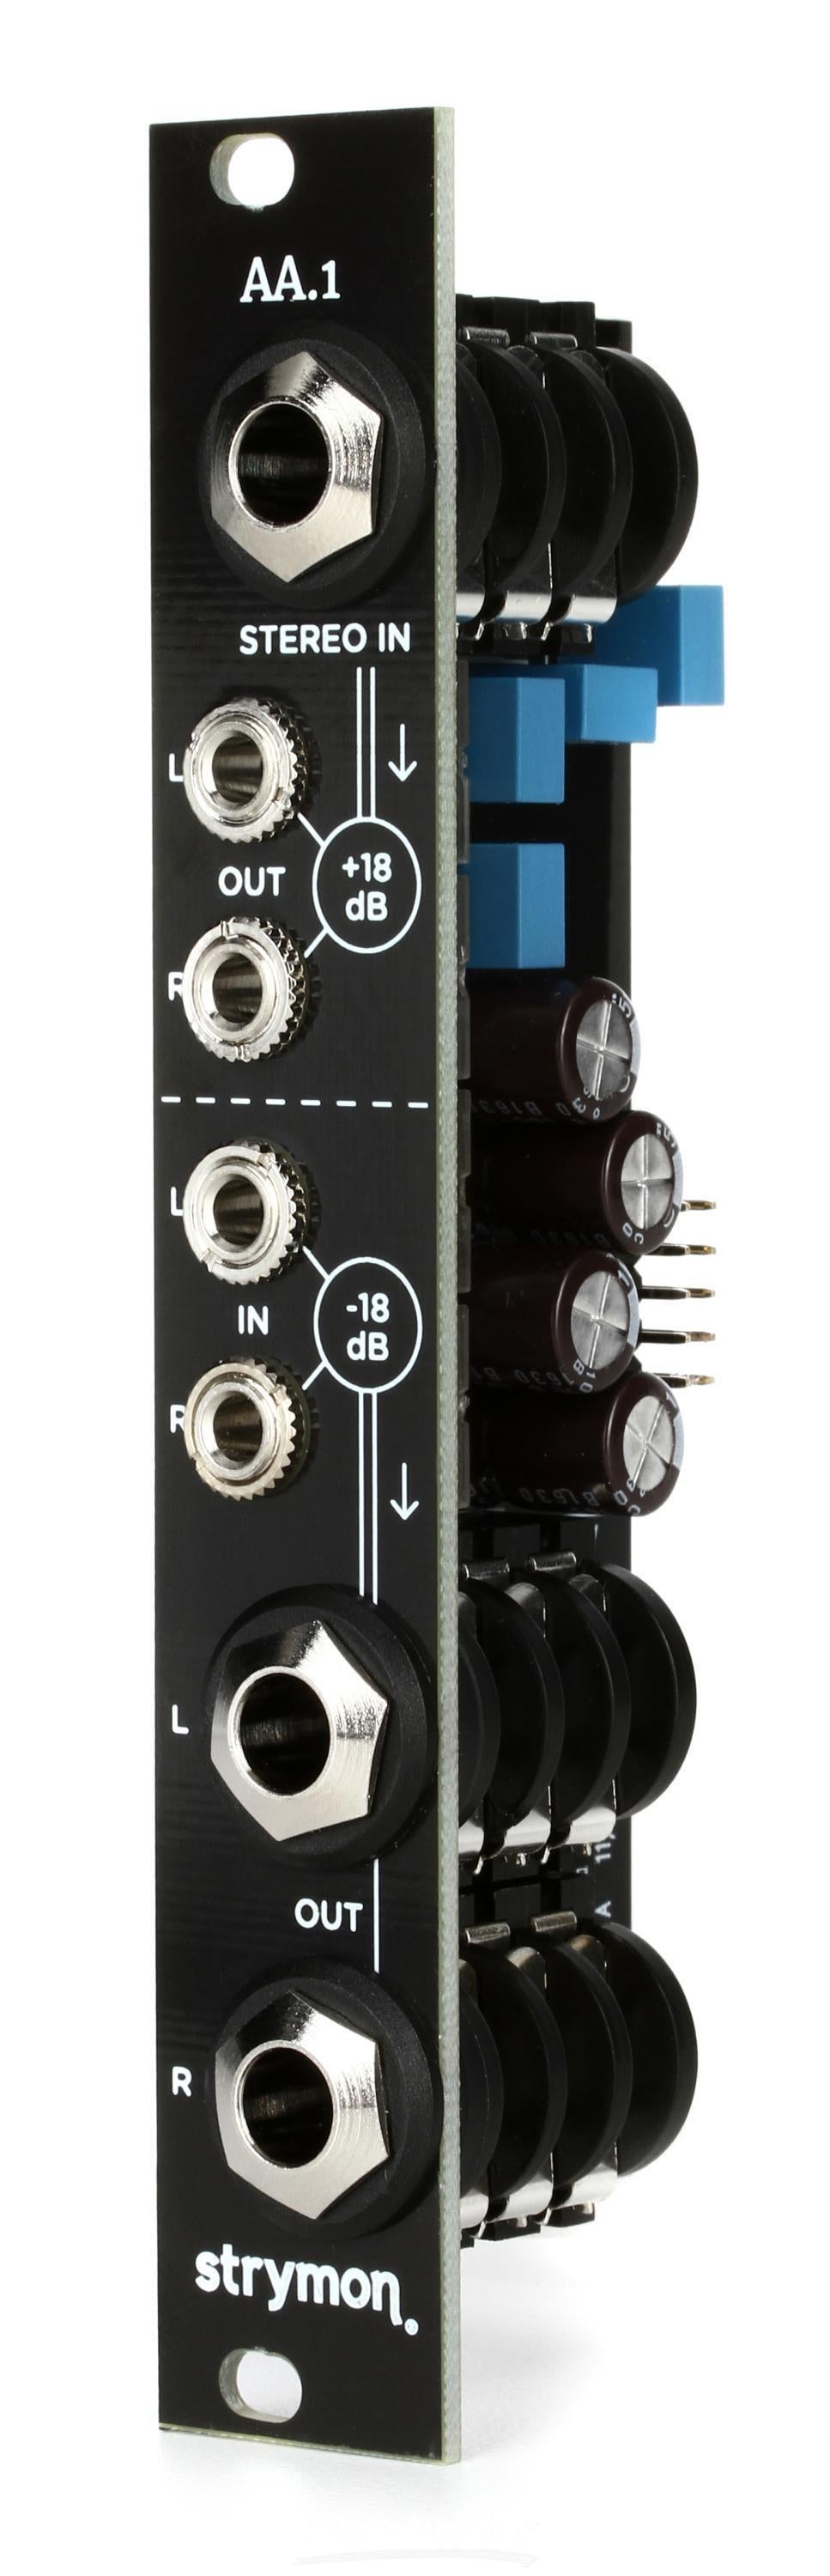 Strymon AA.1 Amplifier Attenuator Eurorack Module